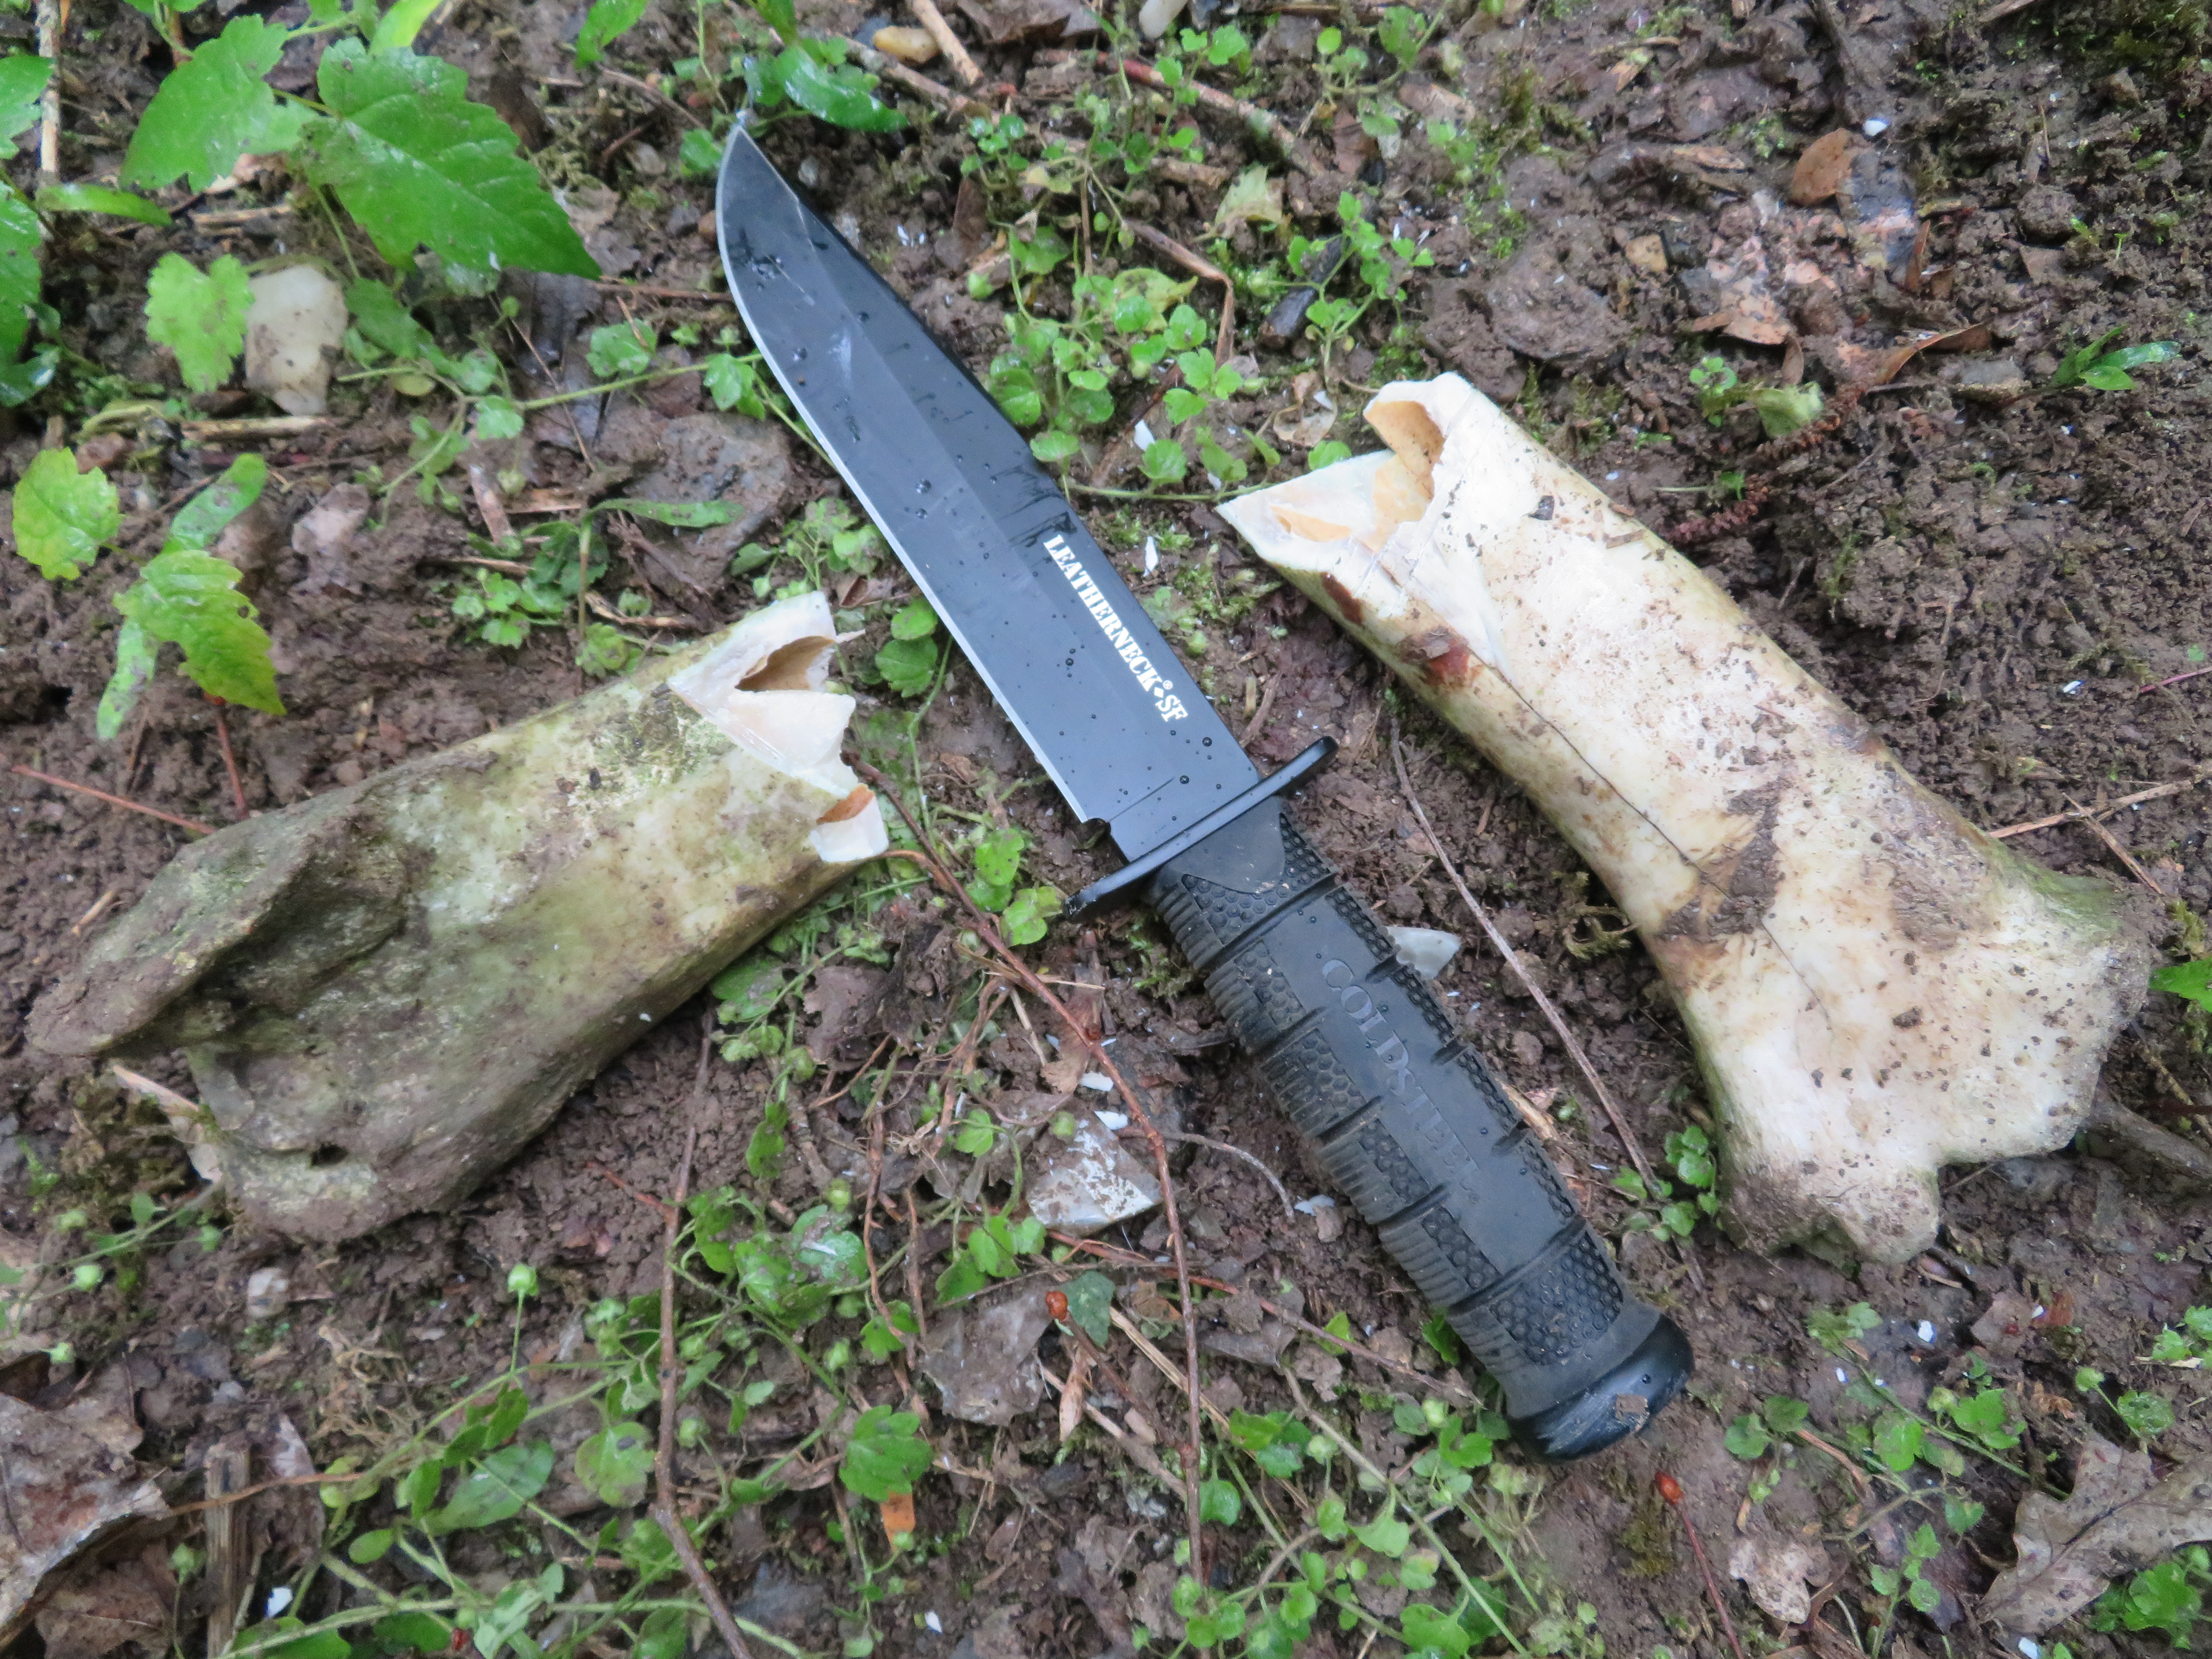 www.cold-steel.cz_S testovaným nožem jsem také bez problémů naštípal a rozsekal několik zvířecích kostí a lebek.